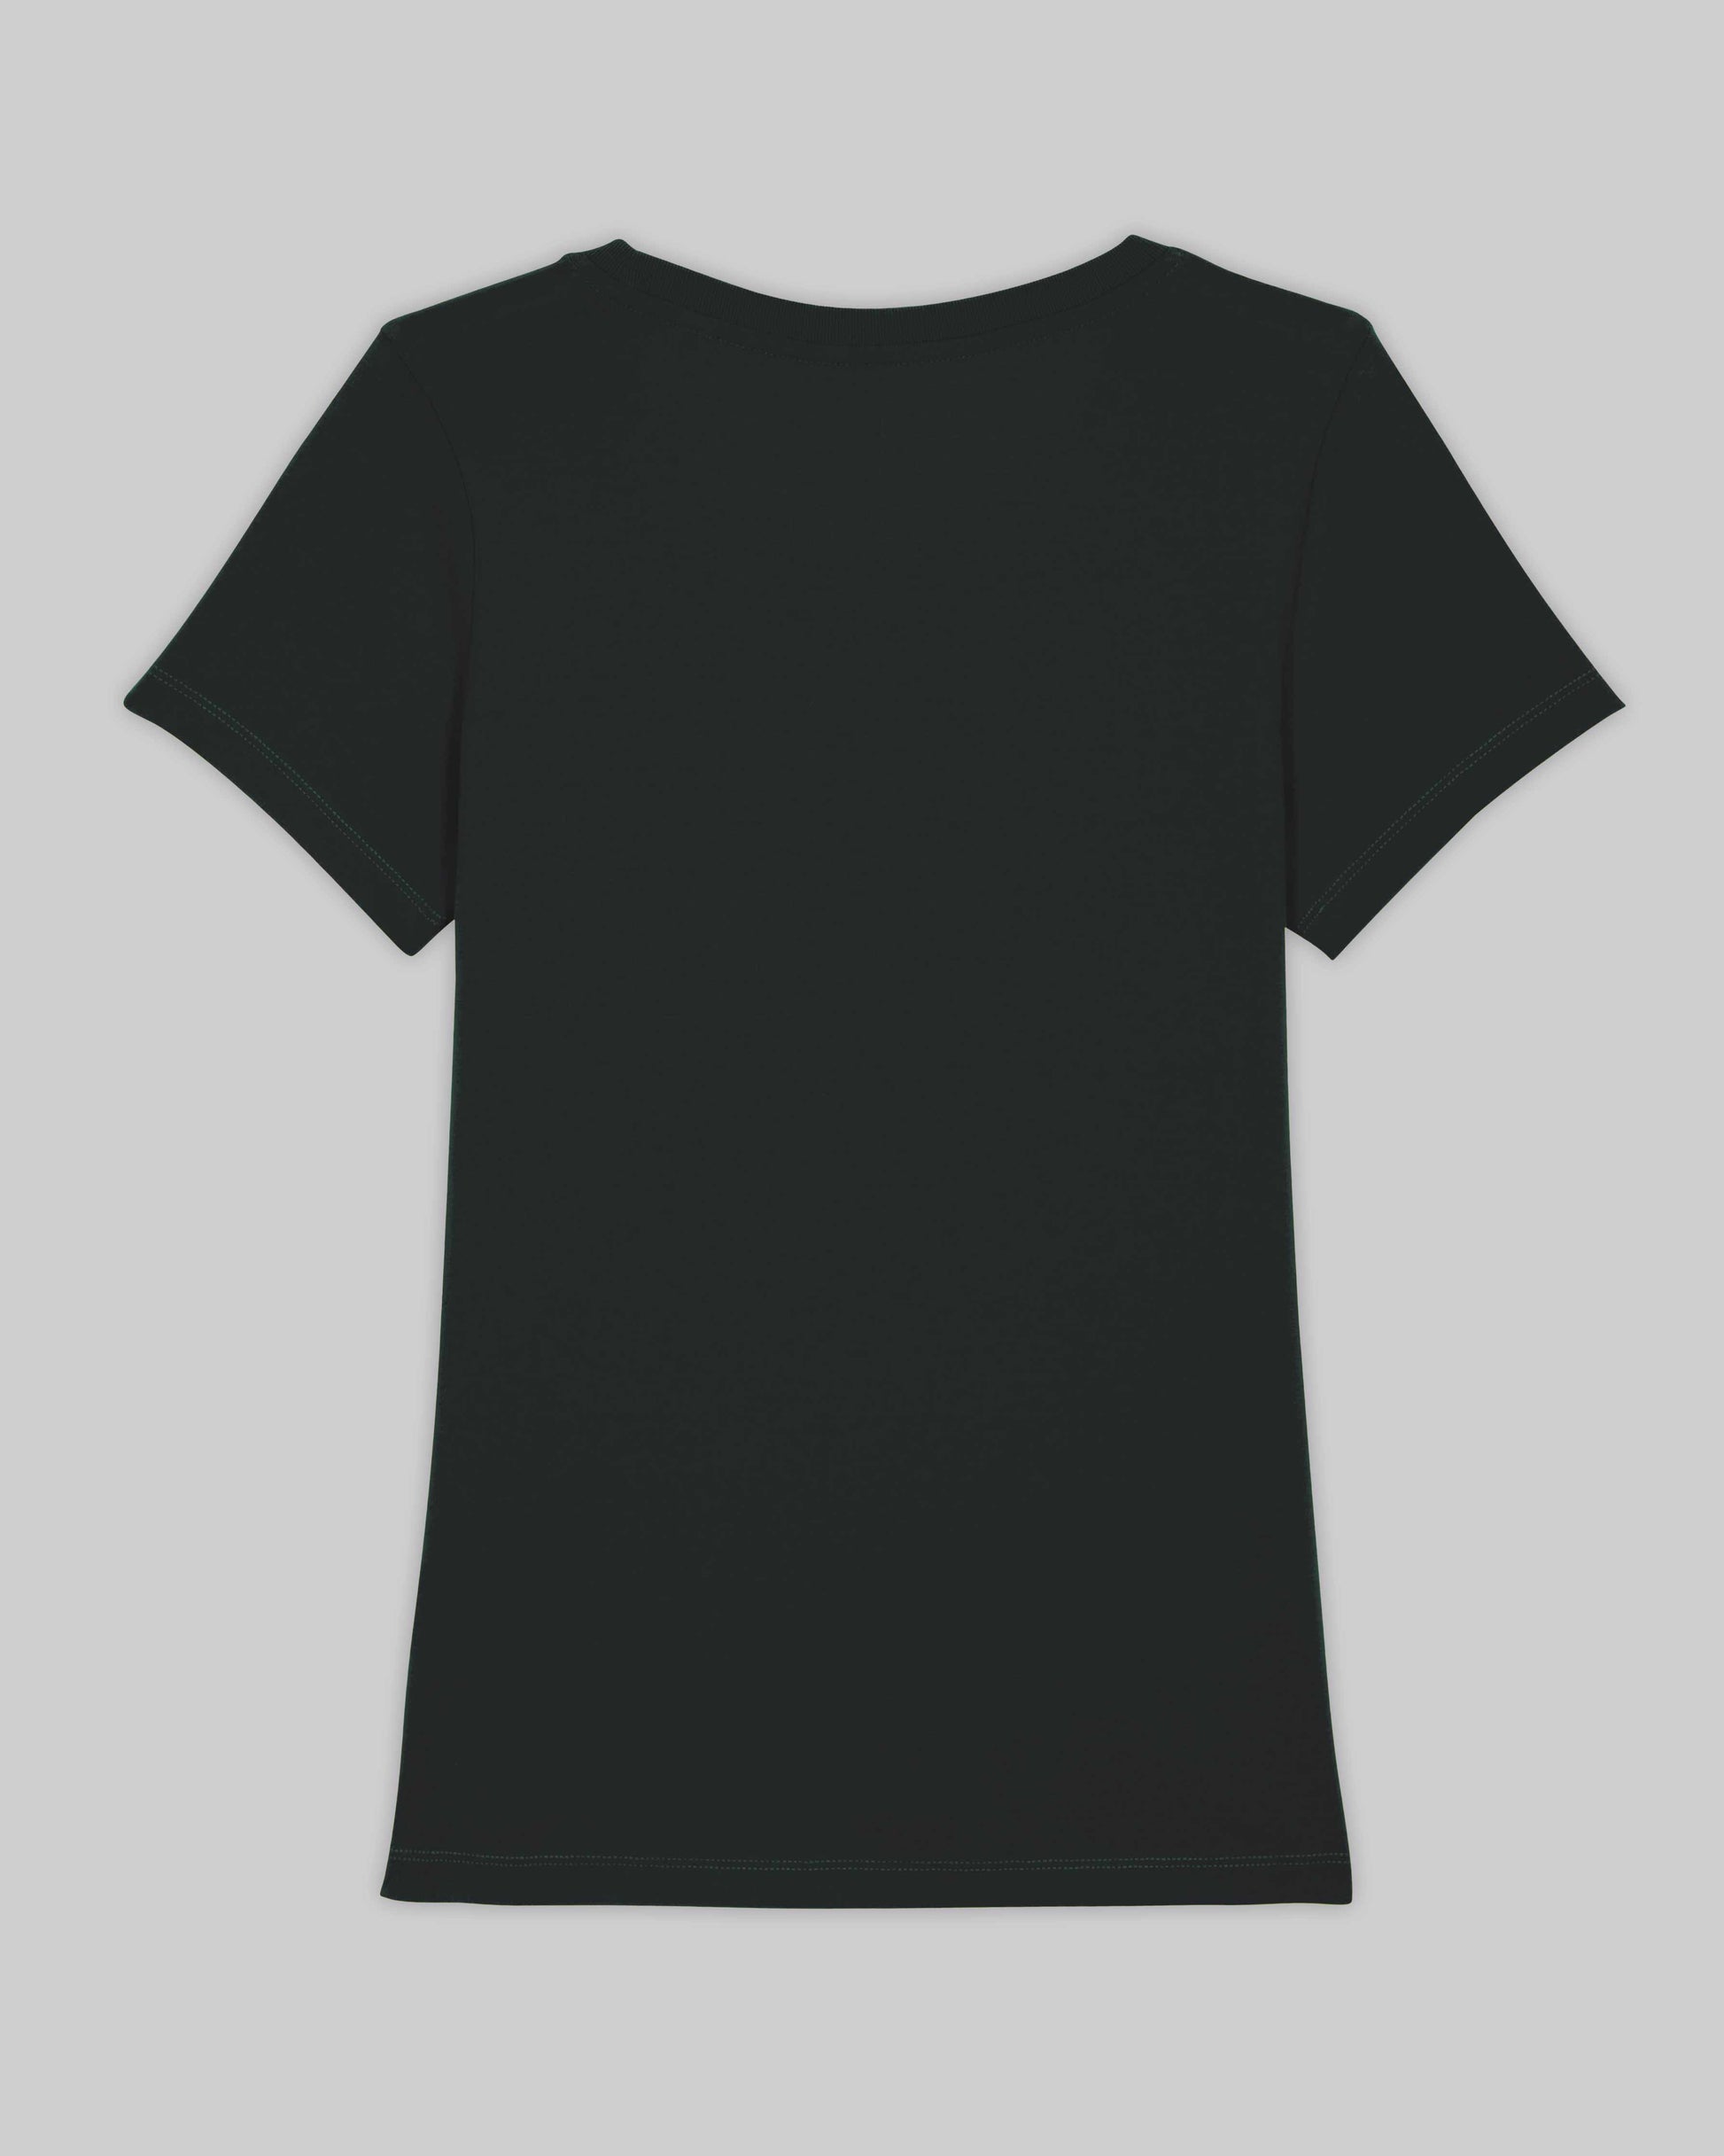 EINHORST® Organic Shirt tailliert in "Schwarz" mit dem Motiv "queer Regenbogen" in der Kombination weißer Regenbogen mit weißer Schrift, Bild von Shirt von hinten